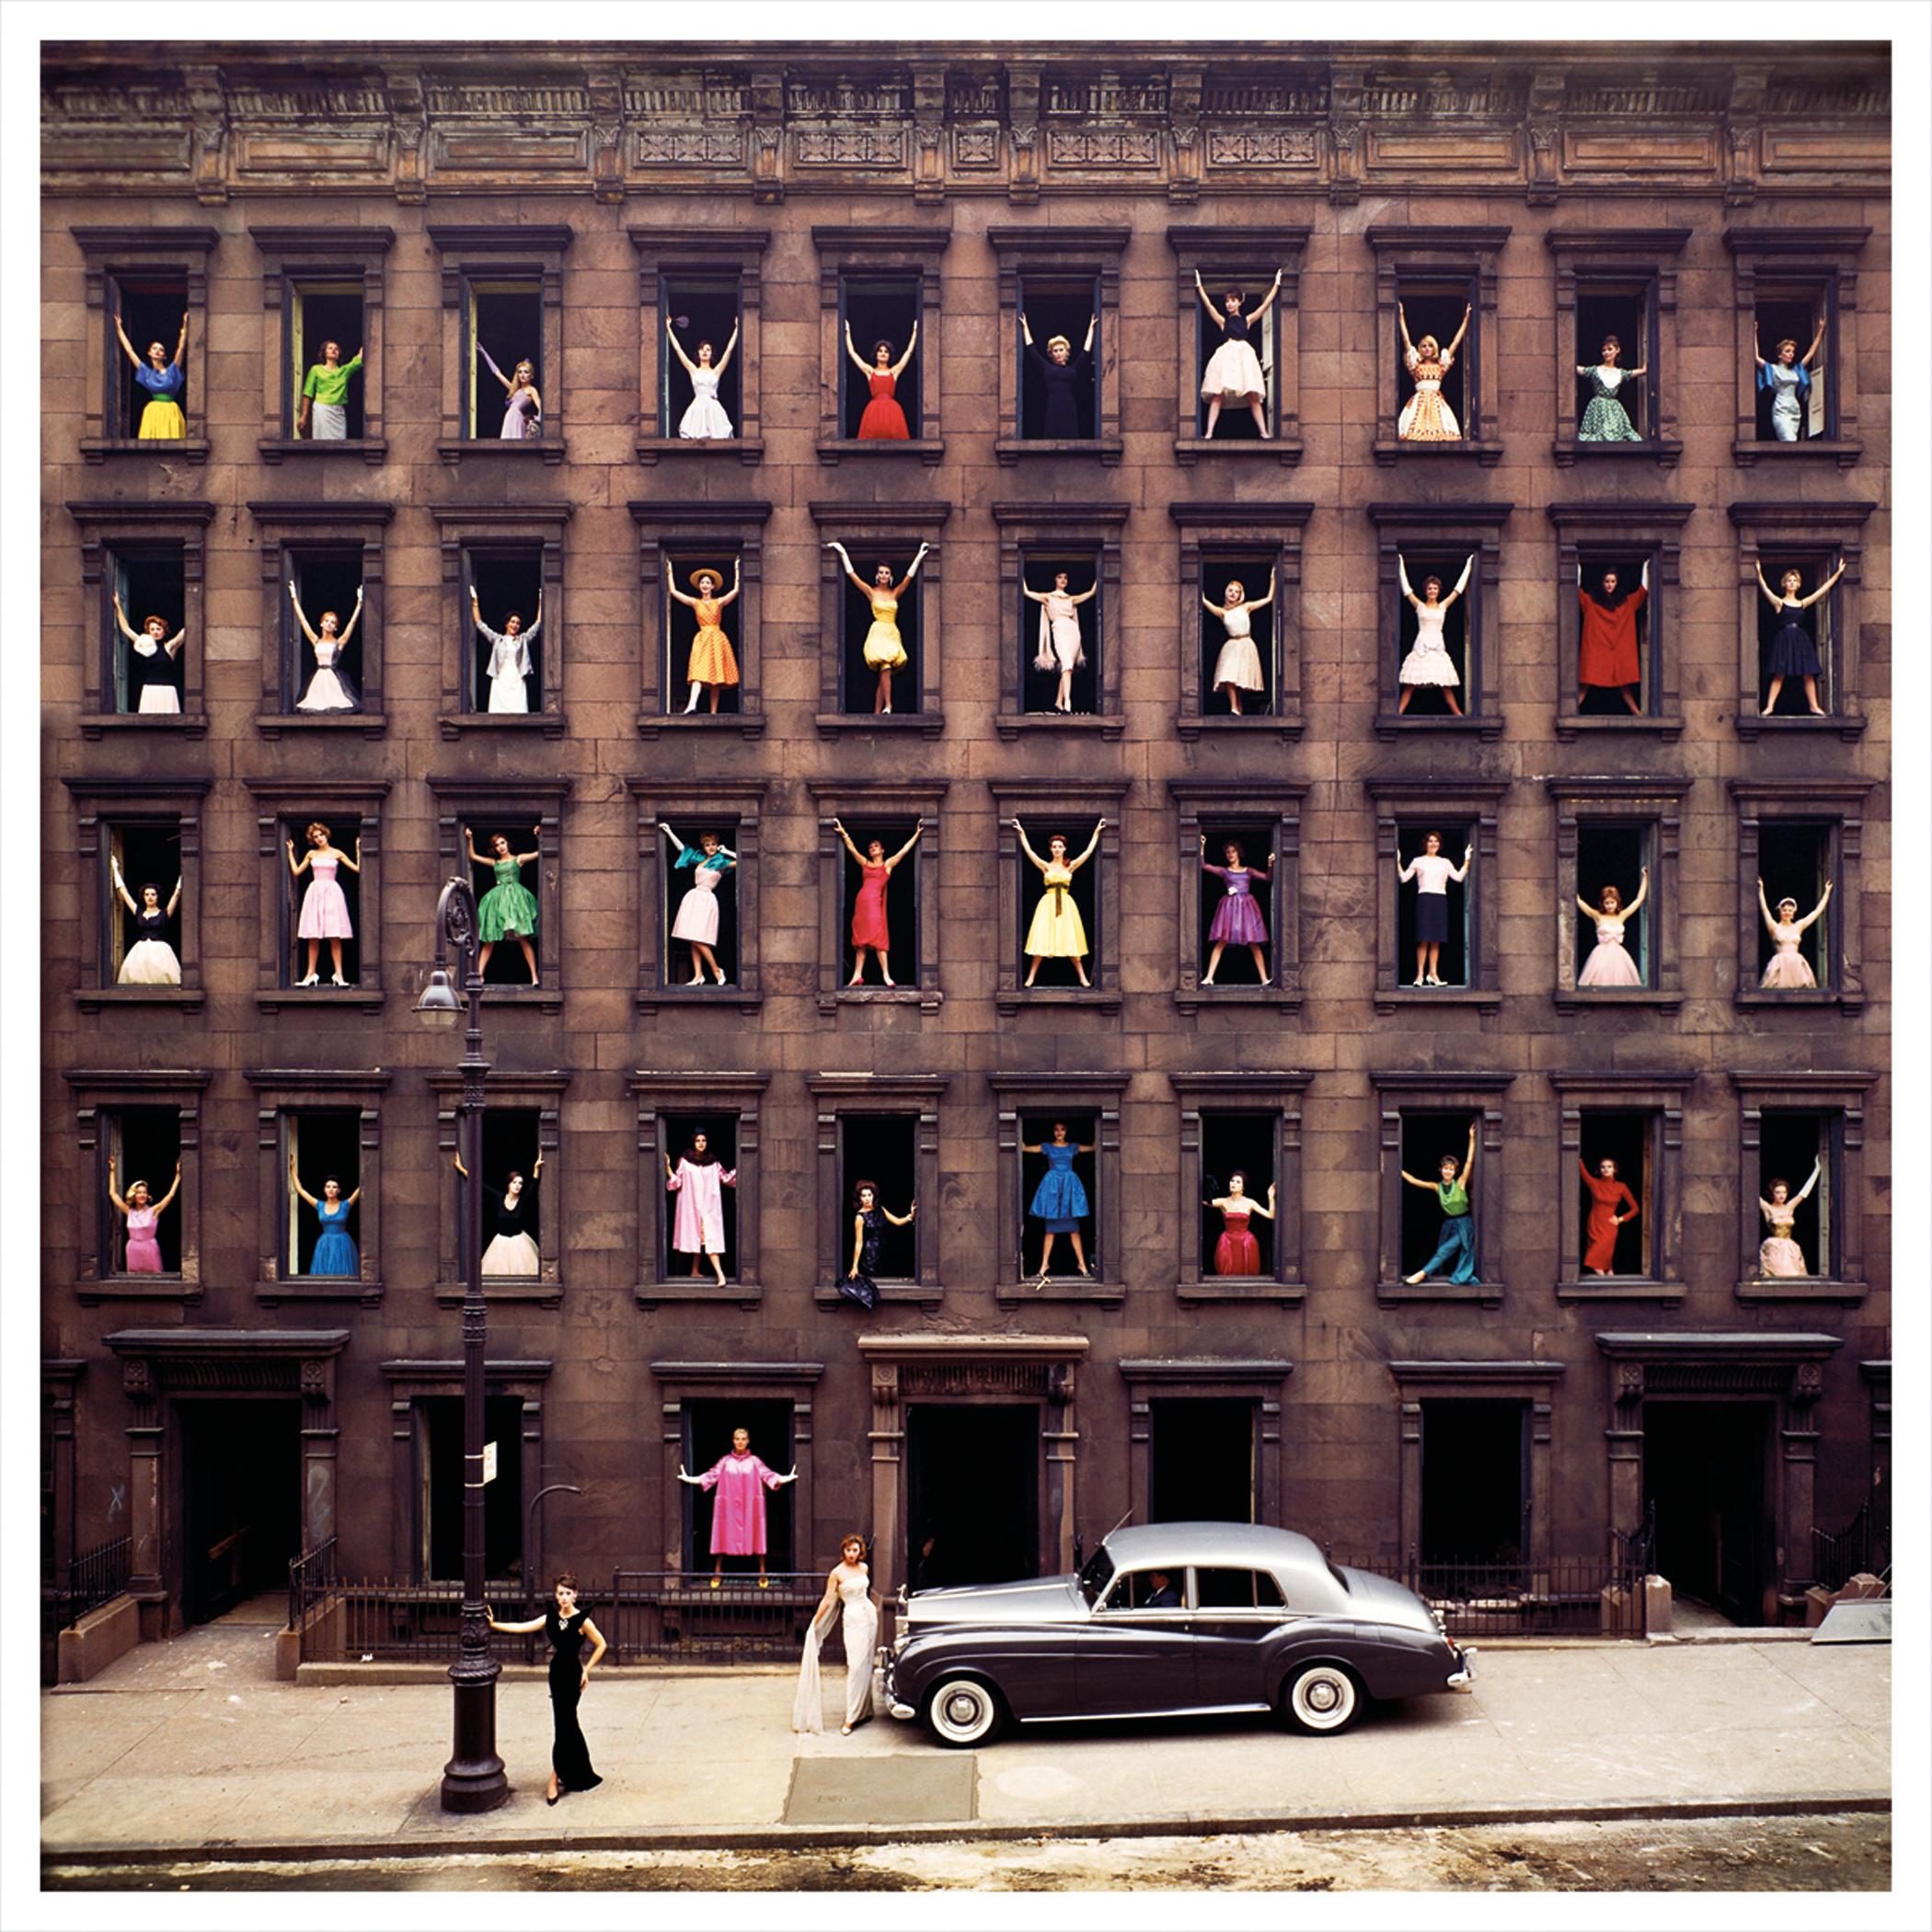 Ormond Gigli
Mädchen im Fenster, 1960 (später gedruckt)
Farbiger Kupplerdruck
16 x 16 Zoll
Auflage von 100 Stück
Signiert, nummeriert und datiert vom Künstler

Ormond Gigli: Der Visionär hinter den "Girls in the Windows"
Ormond Gigli ist ein hoch